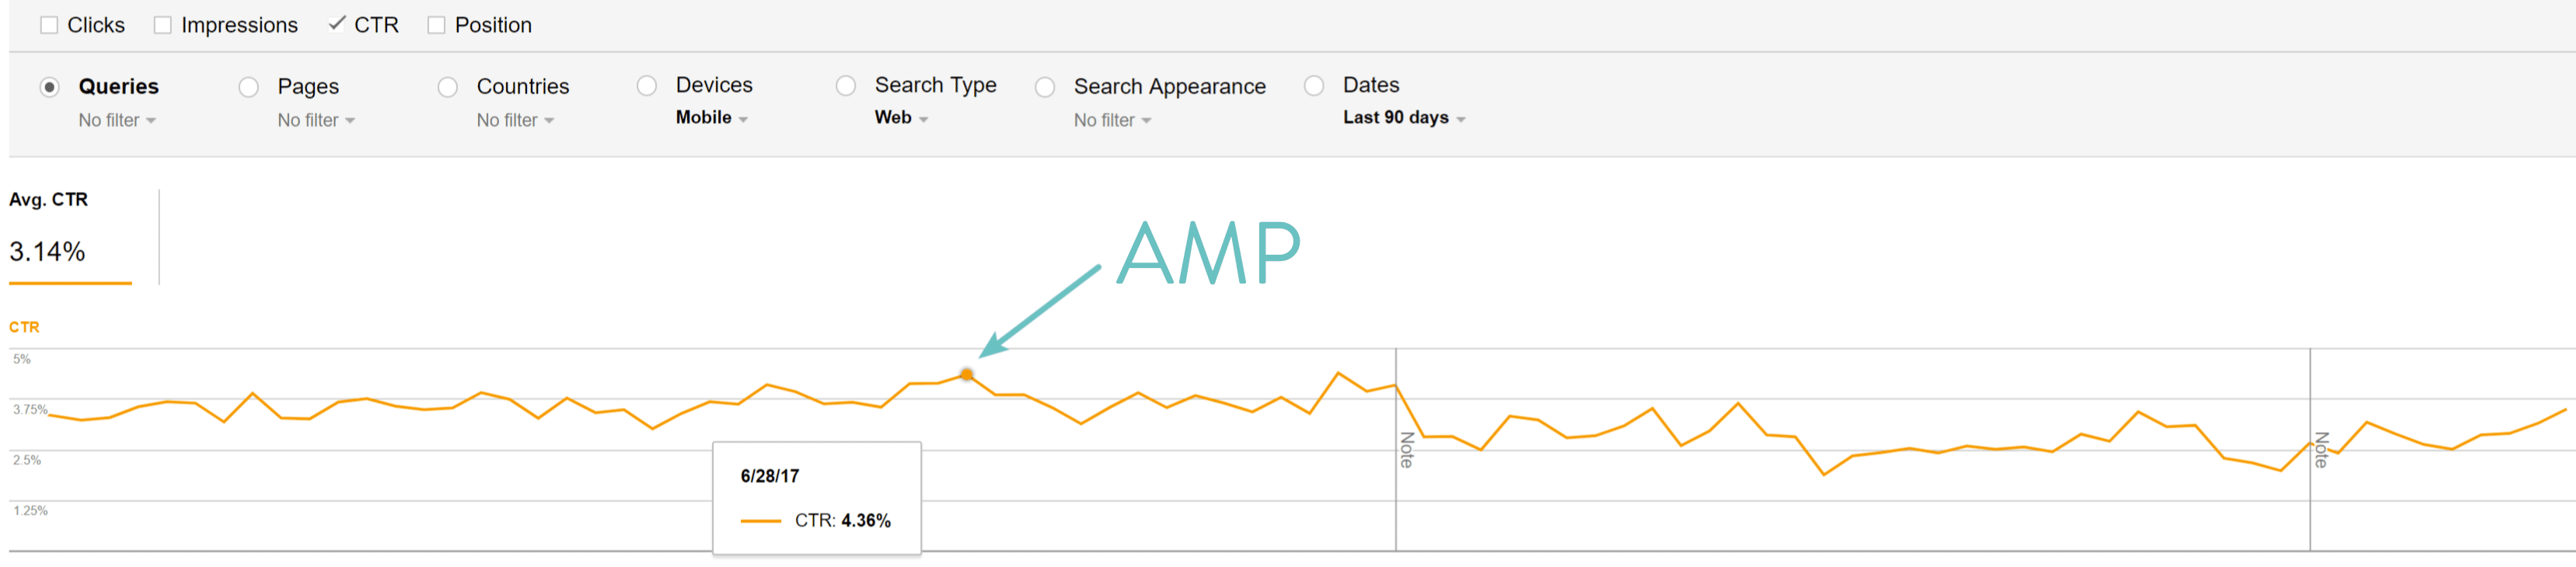 После включения Google AMP мы увидели снижение CTR на мобильных устройствах